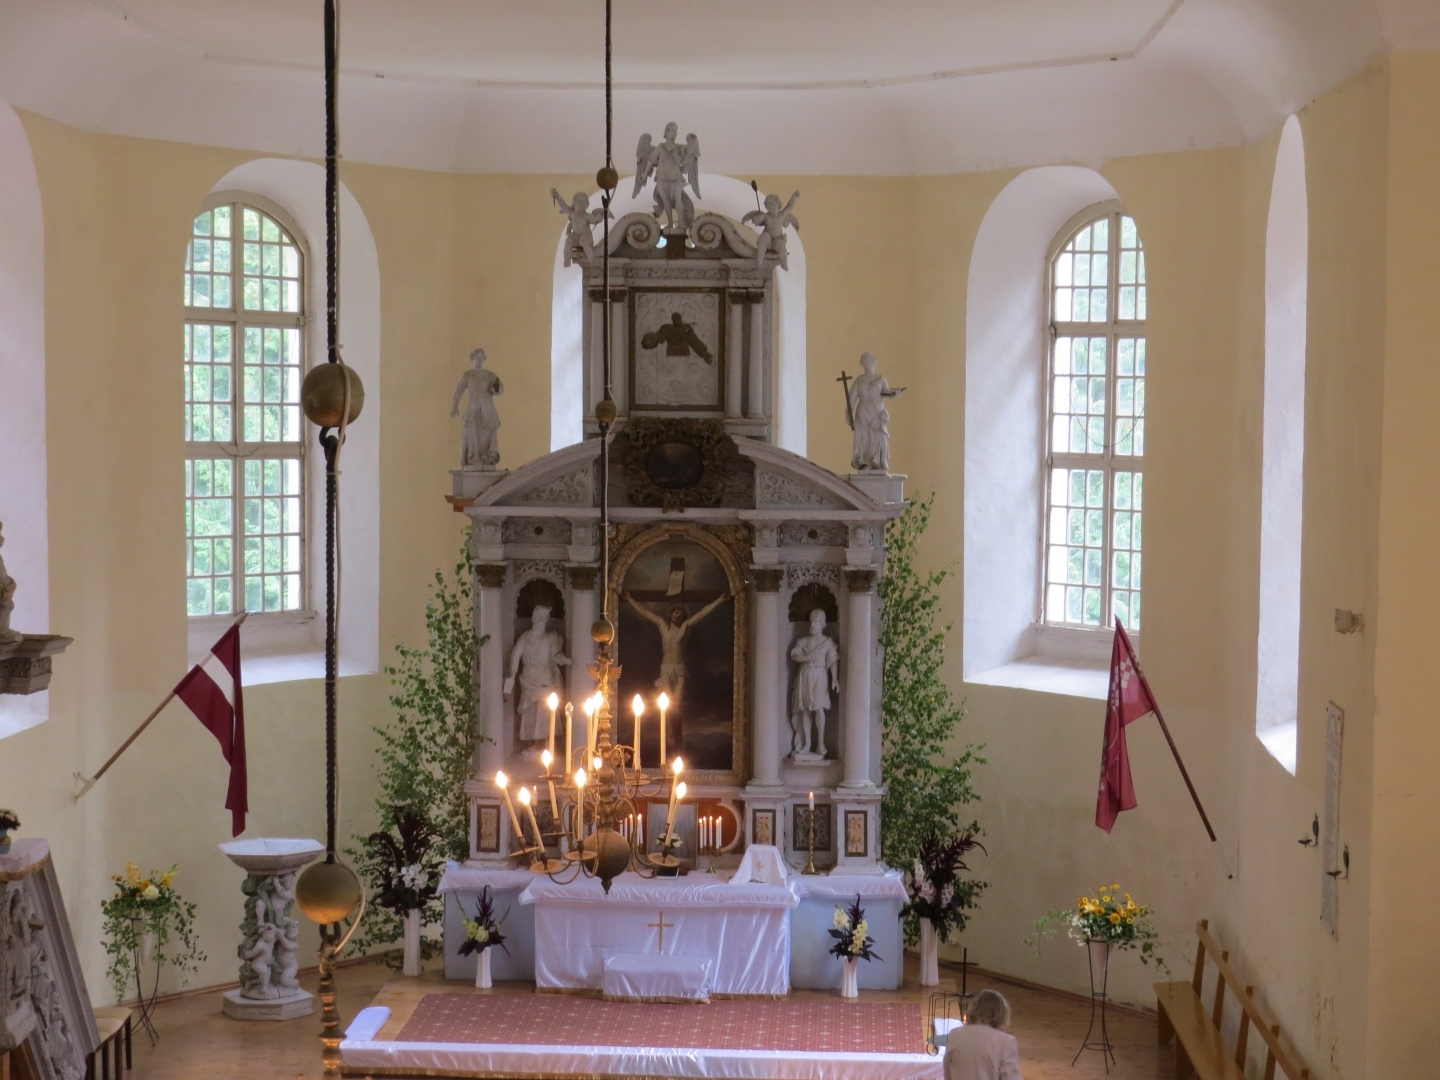 Augstkalnes-Mežmuižas baznīcas iekšskats ar altāri